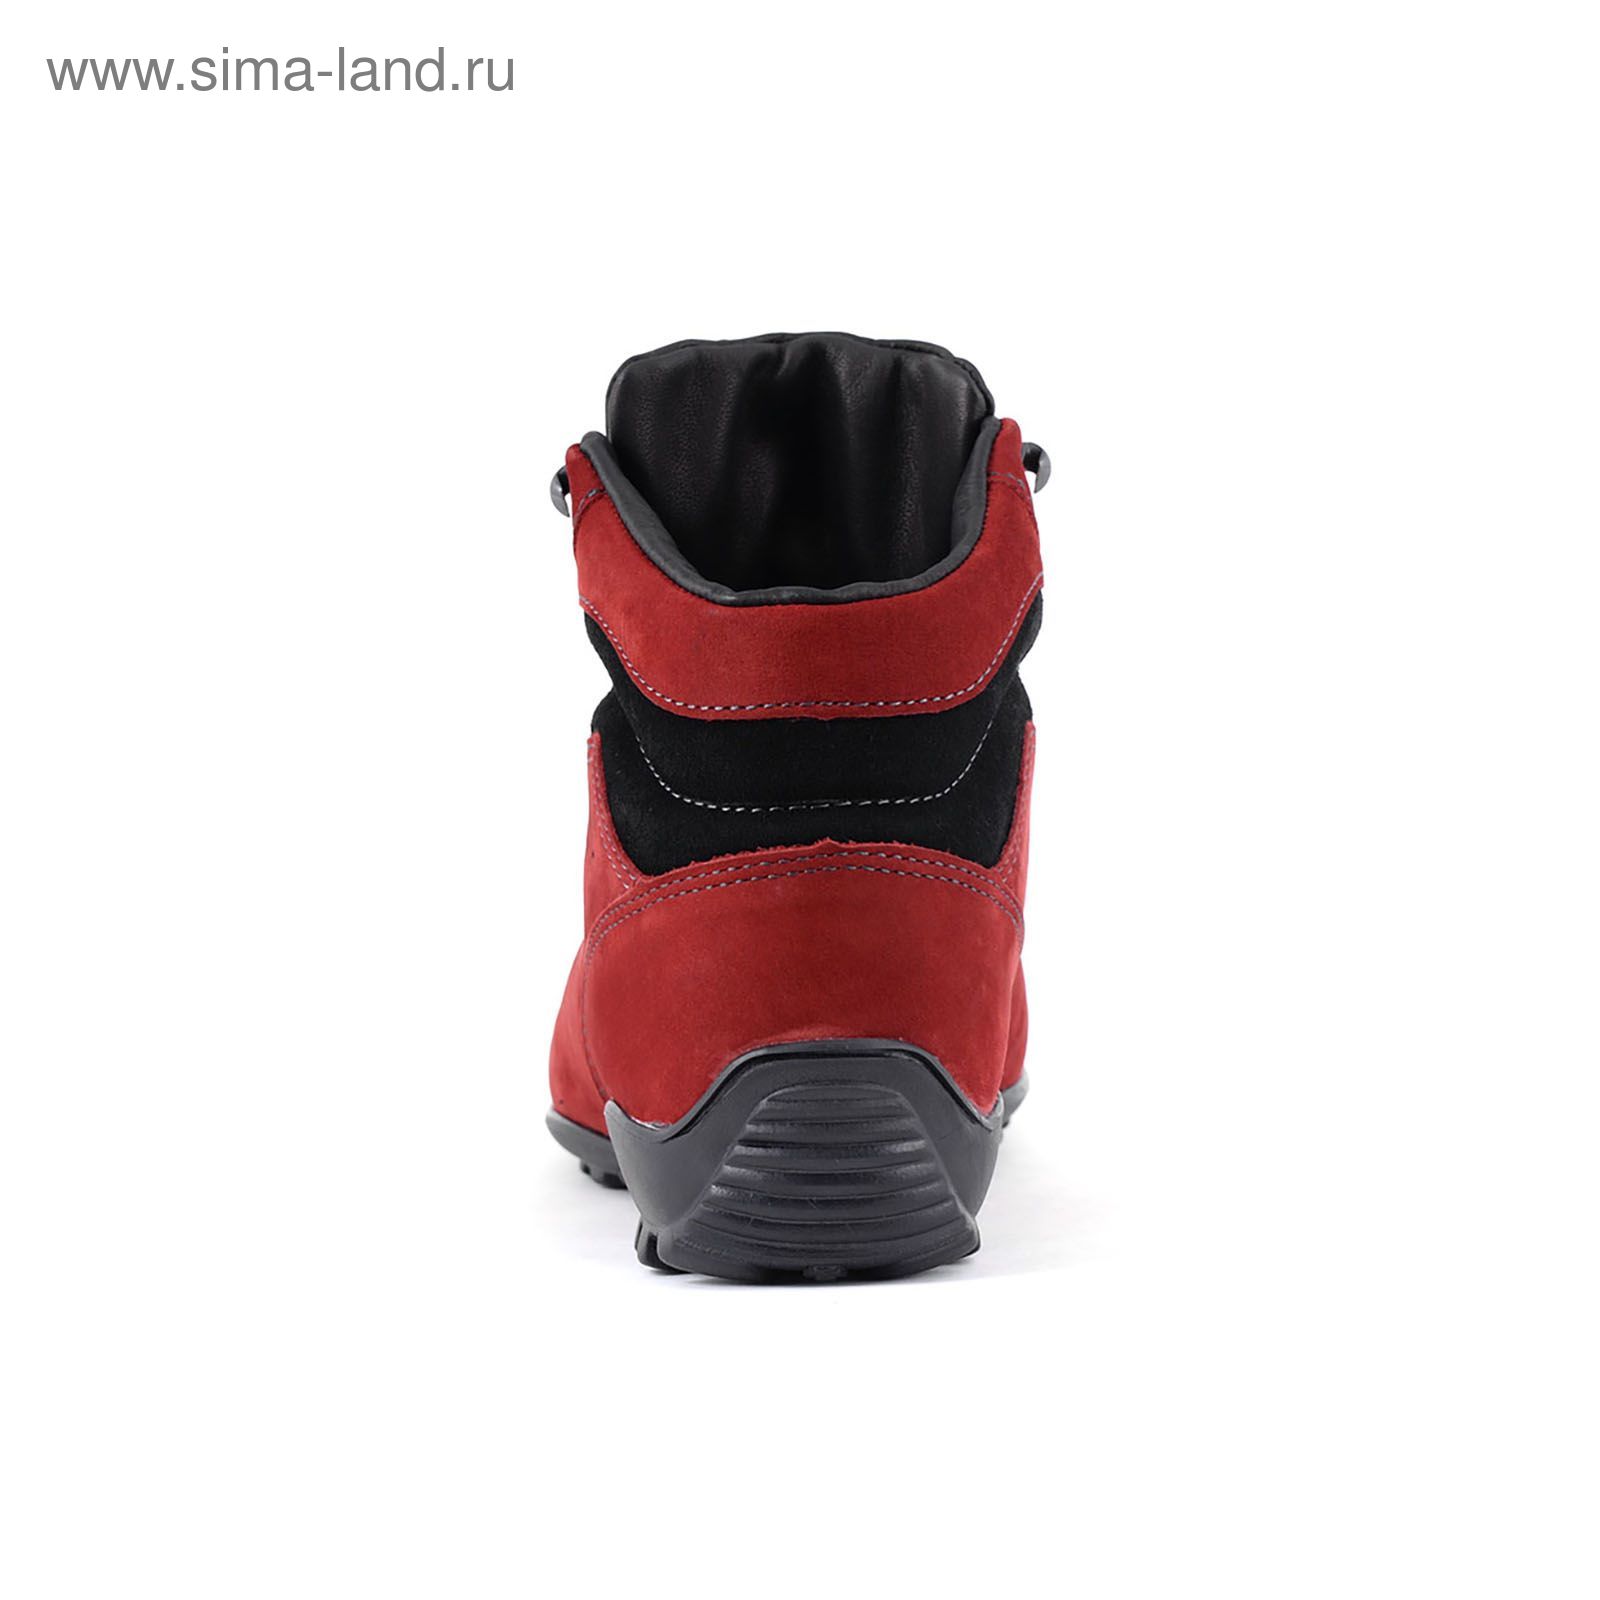 Ботинки TREK Спринт 93-19 мех (темно-красный) (р.36)